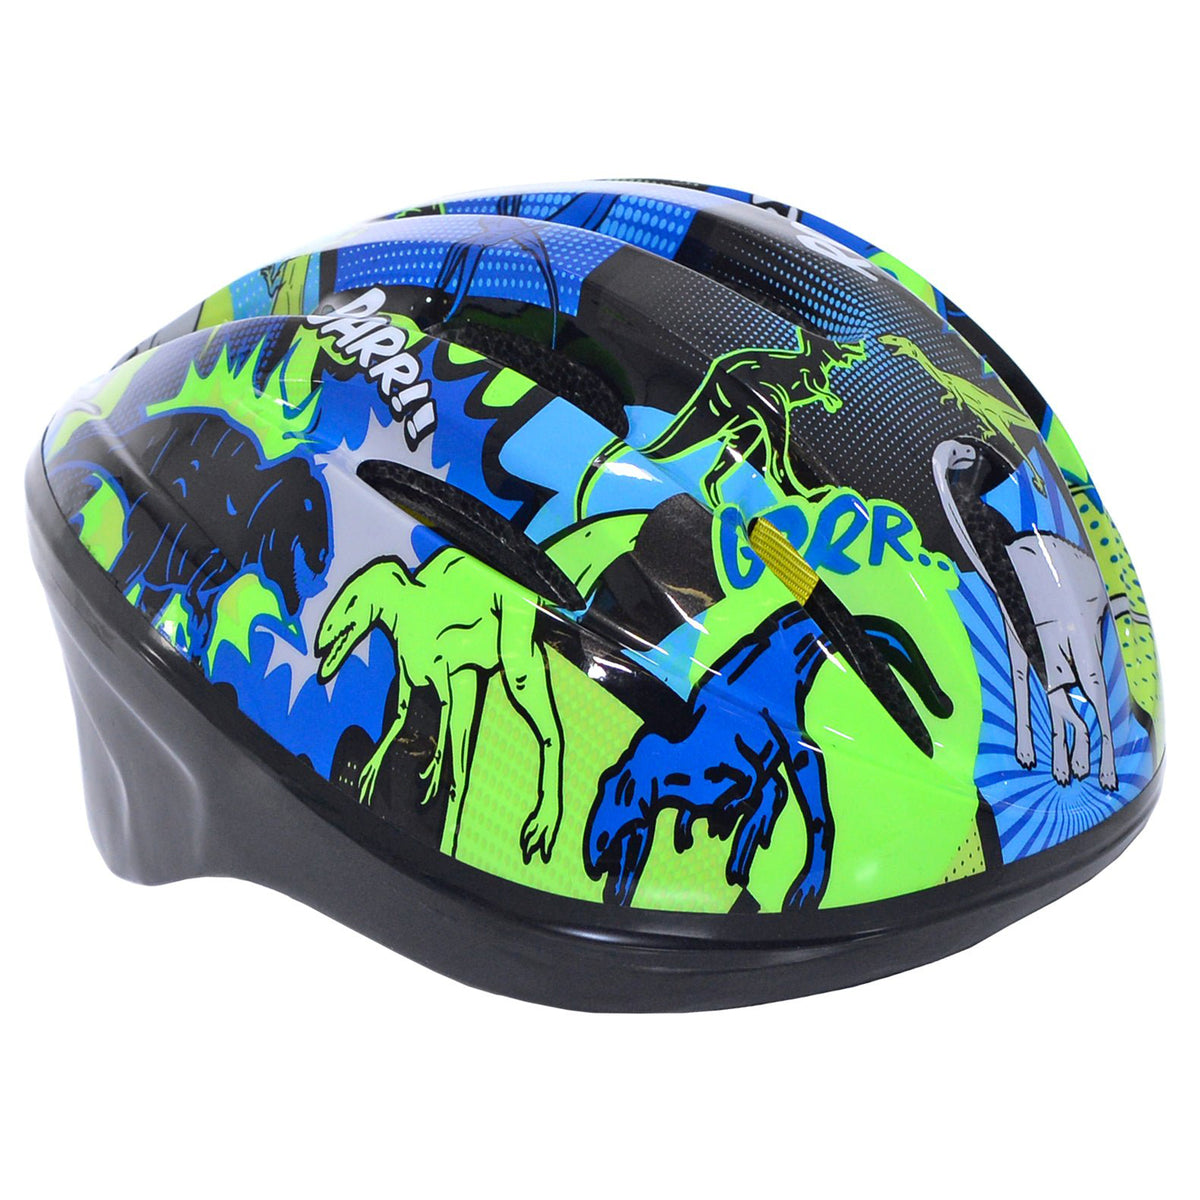 Capstone Dinosaur Child Multi-Sport Helmet | Helmet for Kids Ages 5+